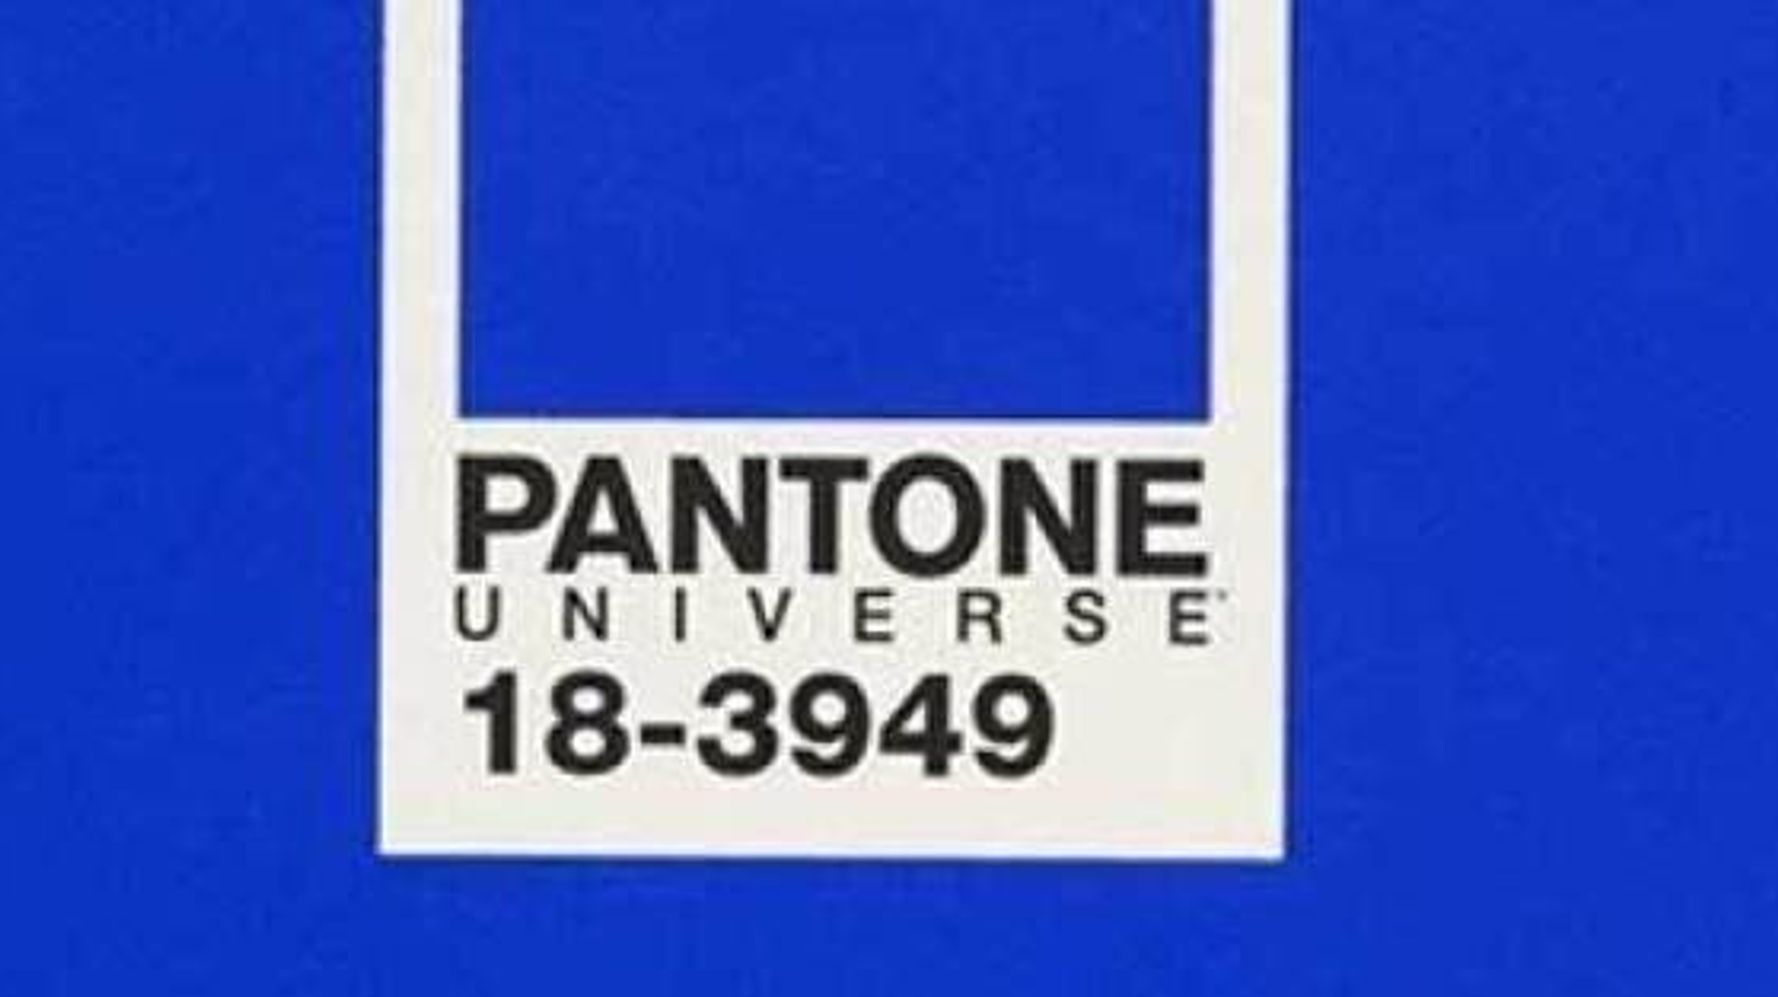 Bleu royal, la couleur de l'année 2014 selon Pantone